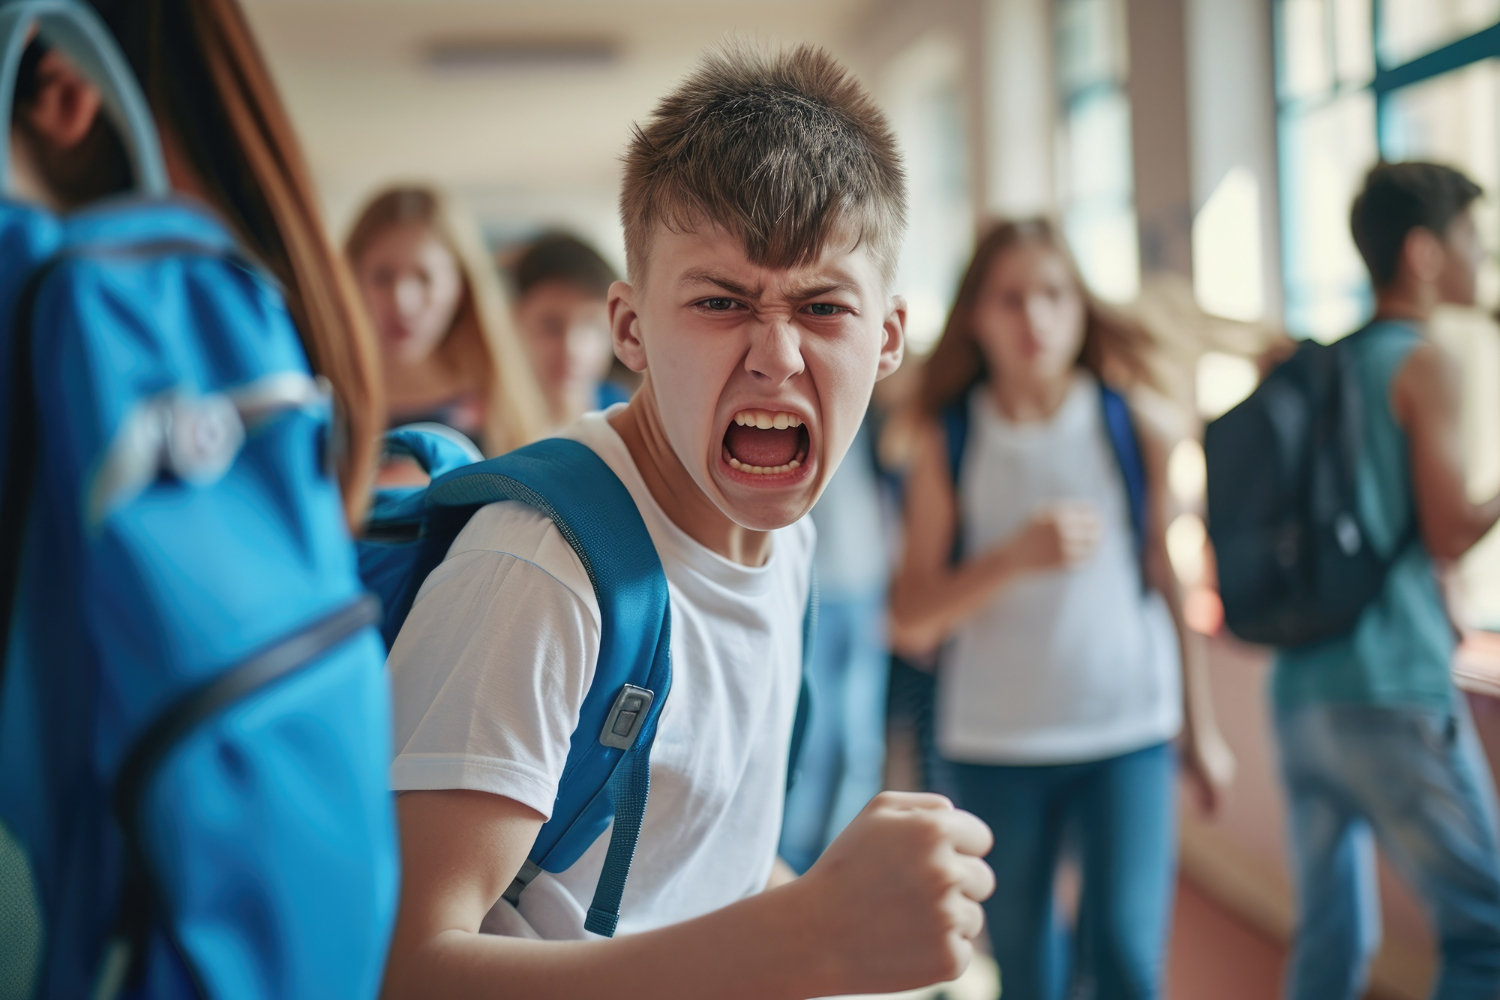 Ce este fenomenul de bullying în școli